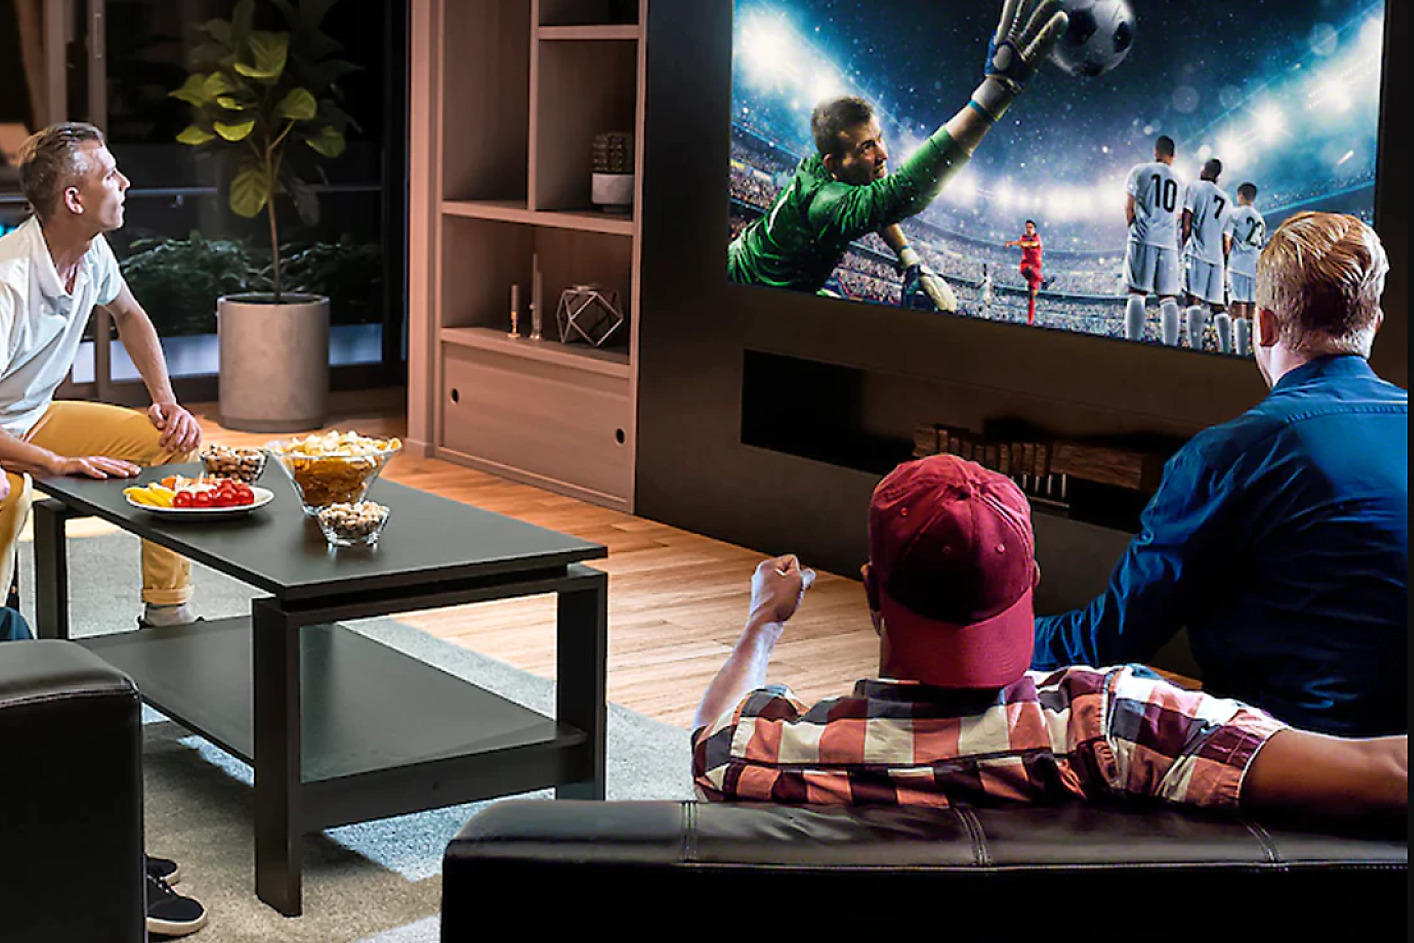 Troje ljudi u dnevnoj sobi gleda televiziju, prikazan je golman kako u skoku hvata loptu.